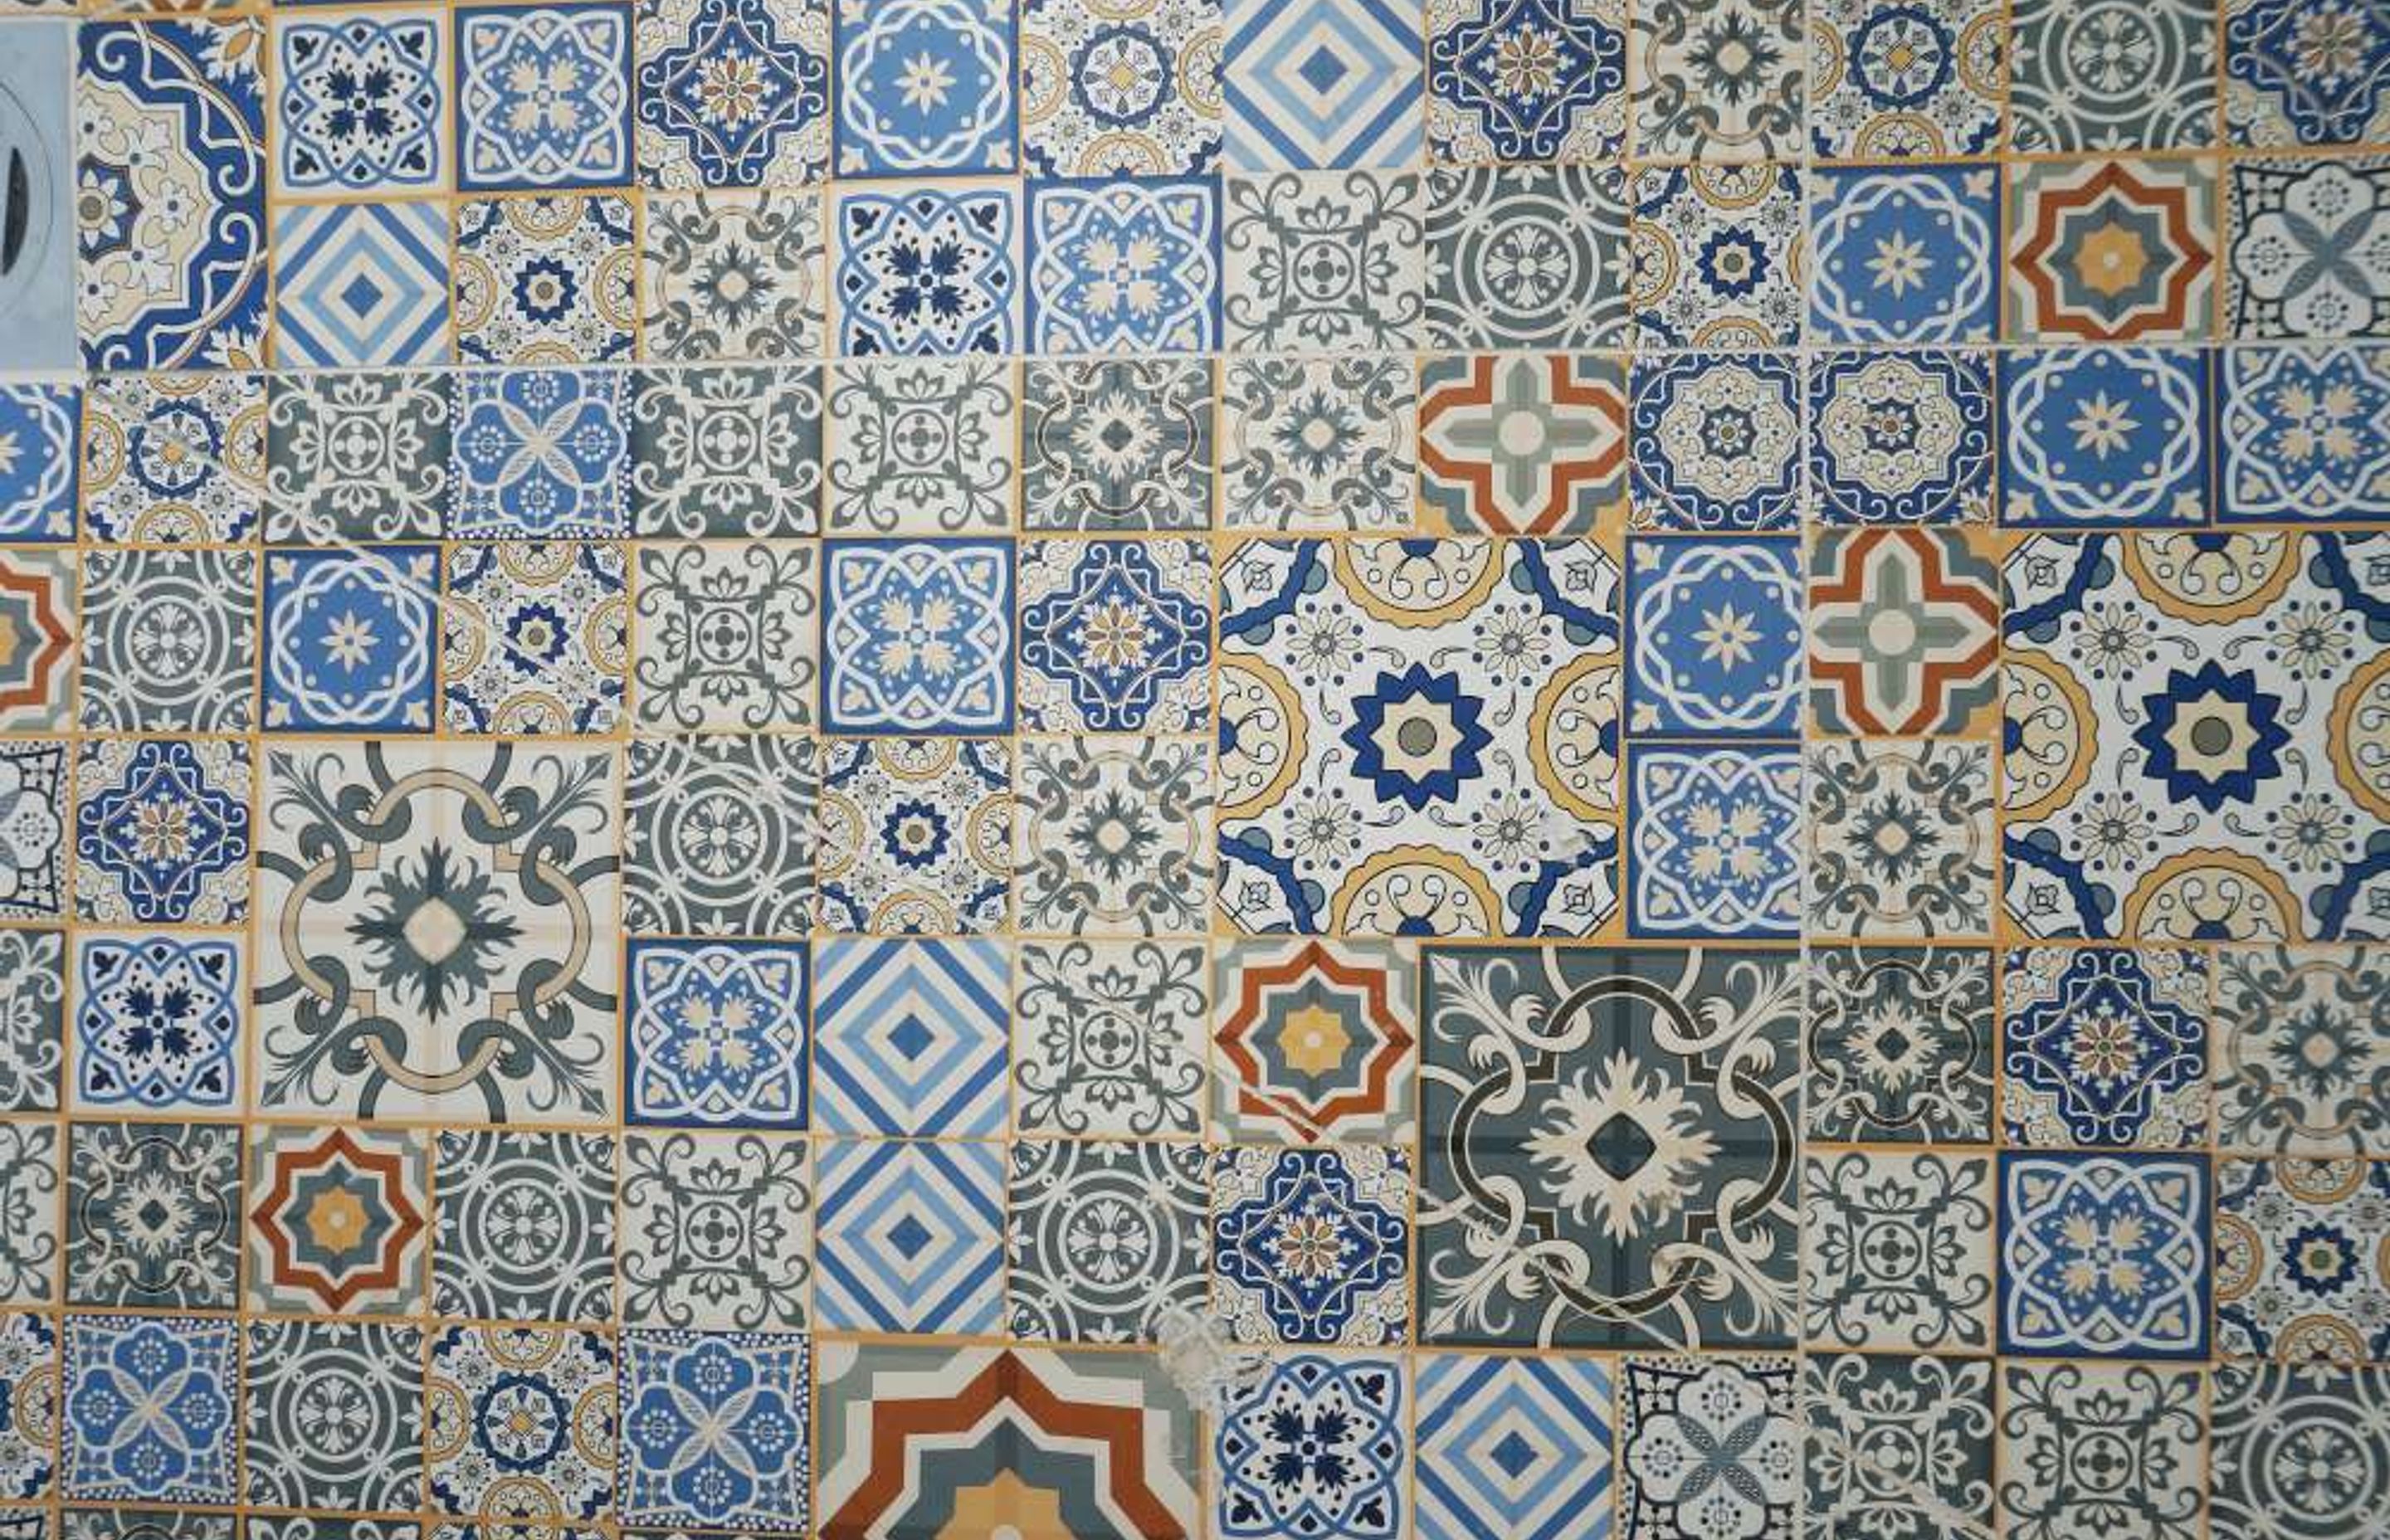 Designer mosaic tiles used on bathroom floor